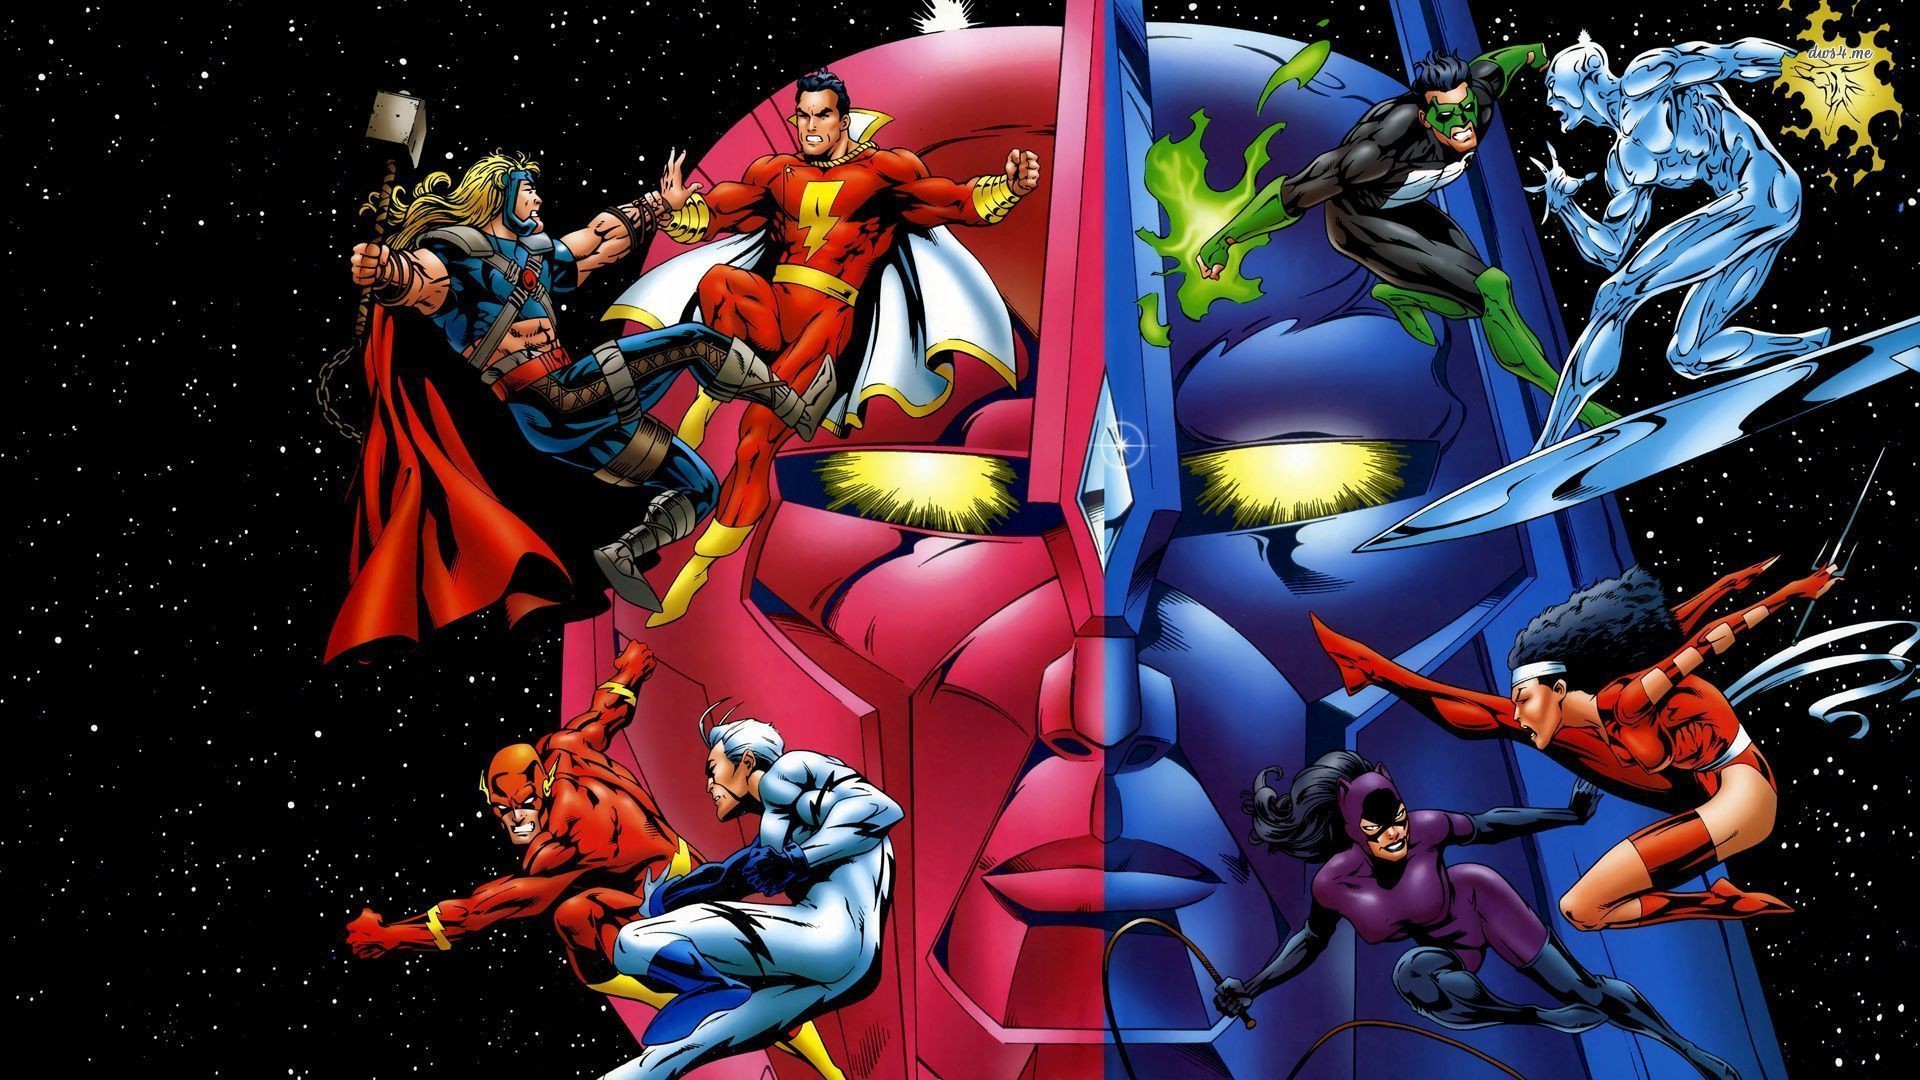 1920x1080 DC Comics vs Marvel superheroes wallpaper - Comic wallpapers .